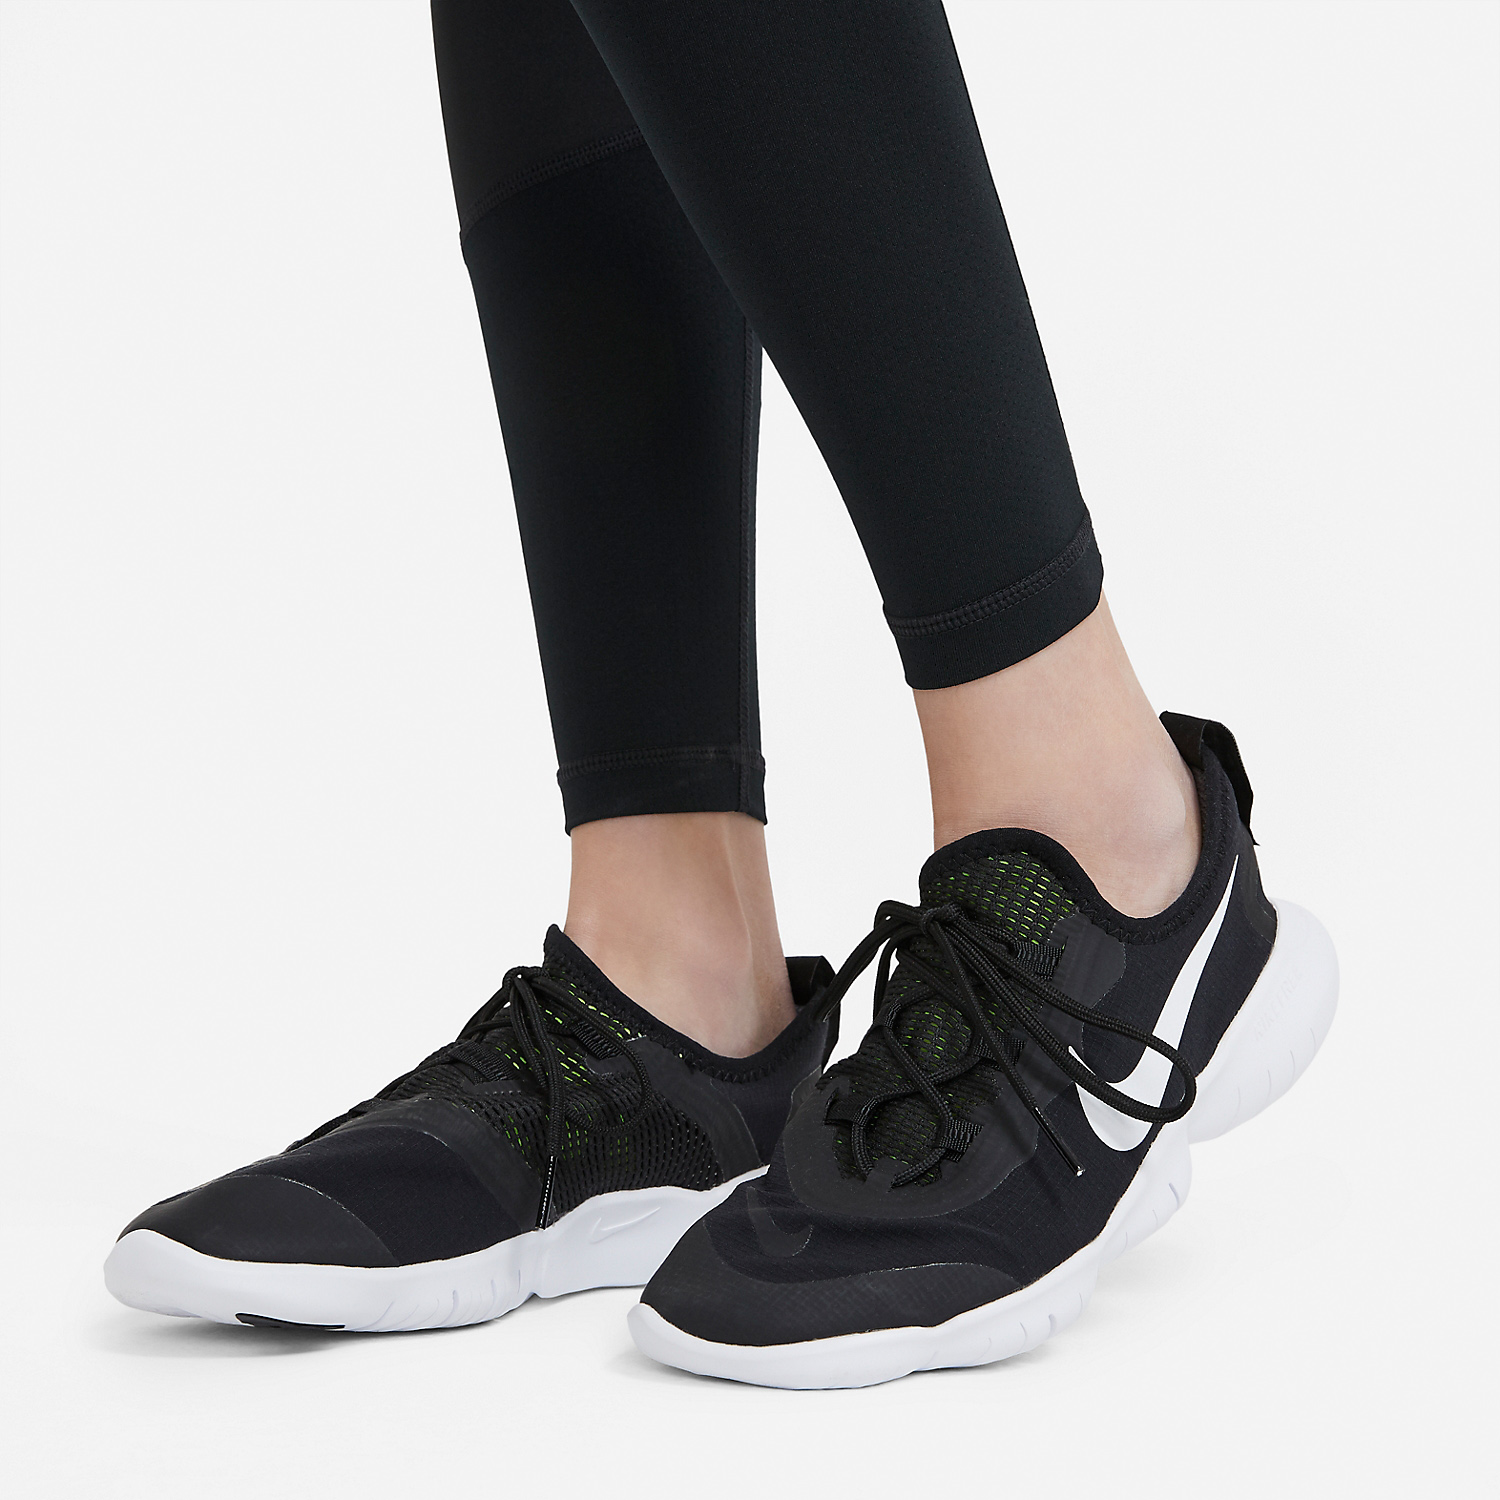 Nike Pro Tights Niña - Black/White